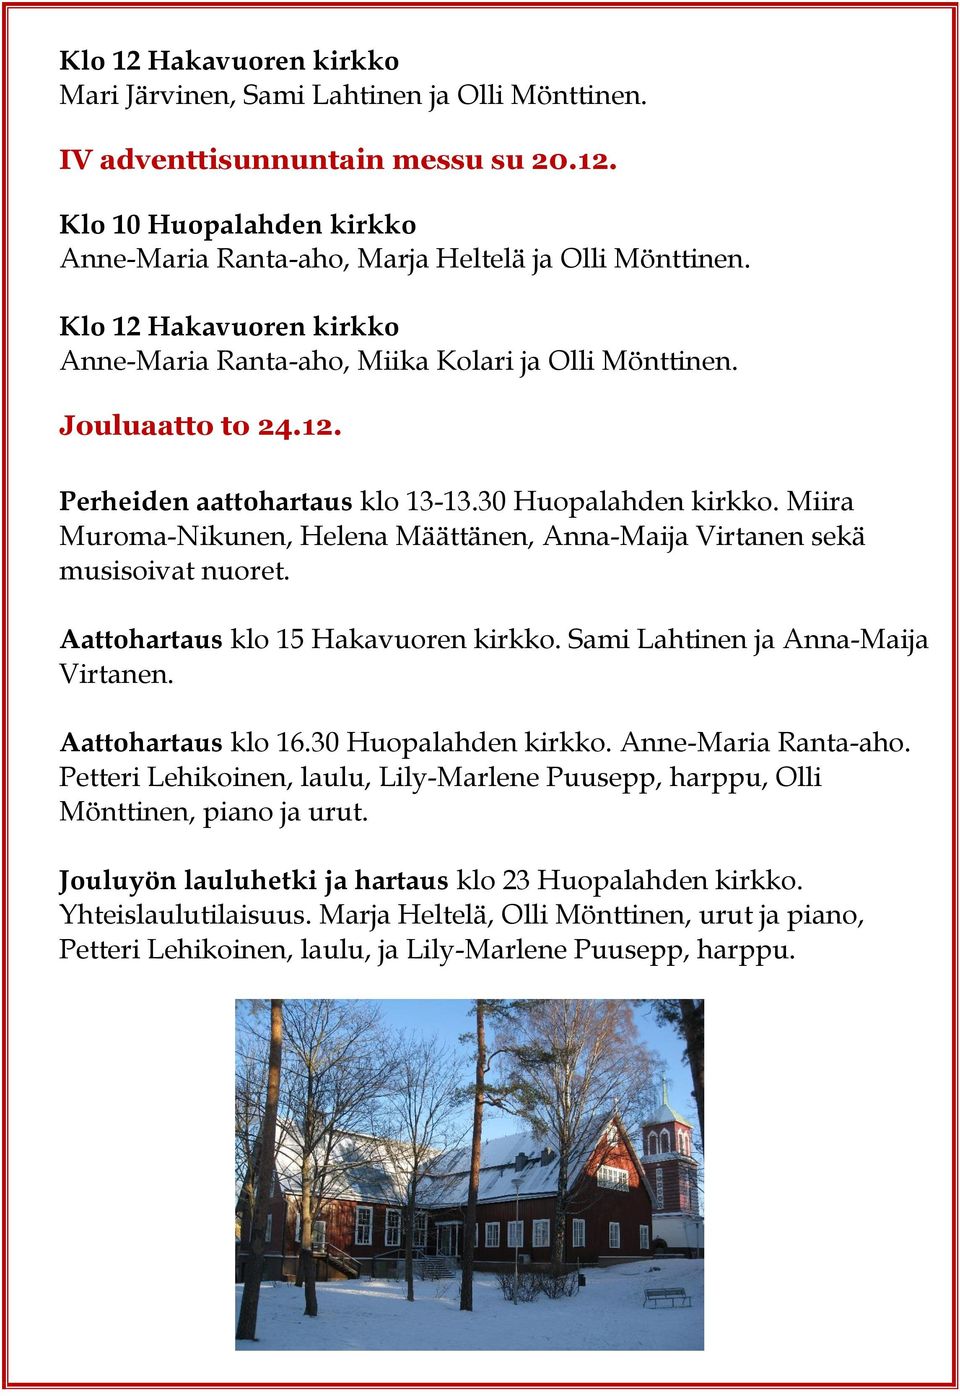 Miira Muroma-Nikunen, Helena Määttänen, Anna-Maija Virtanen sekä musisoivat nuoret. Aattohartaus klo 15 Hakavuoren kirkko. Sami Lahtinen ja Anna-Maija Virtanen. Aattohartaus klo 16.